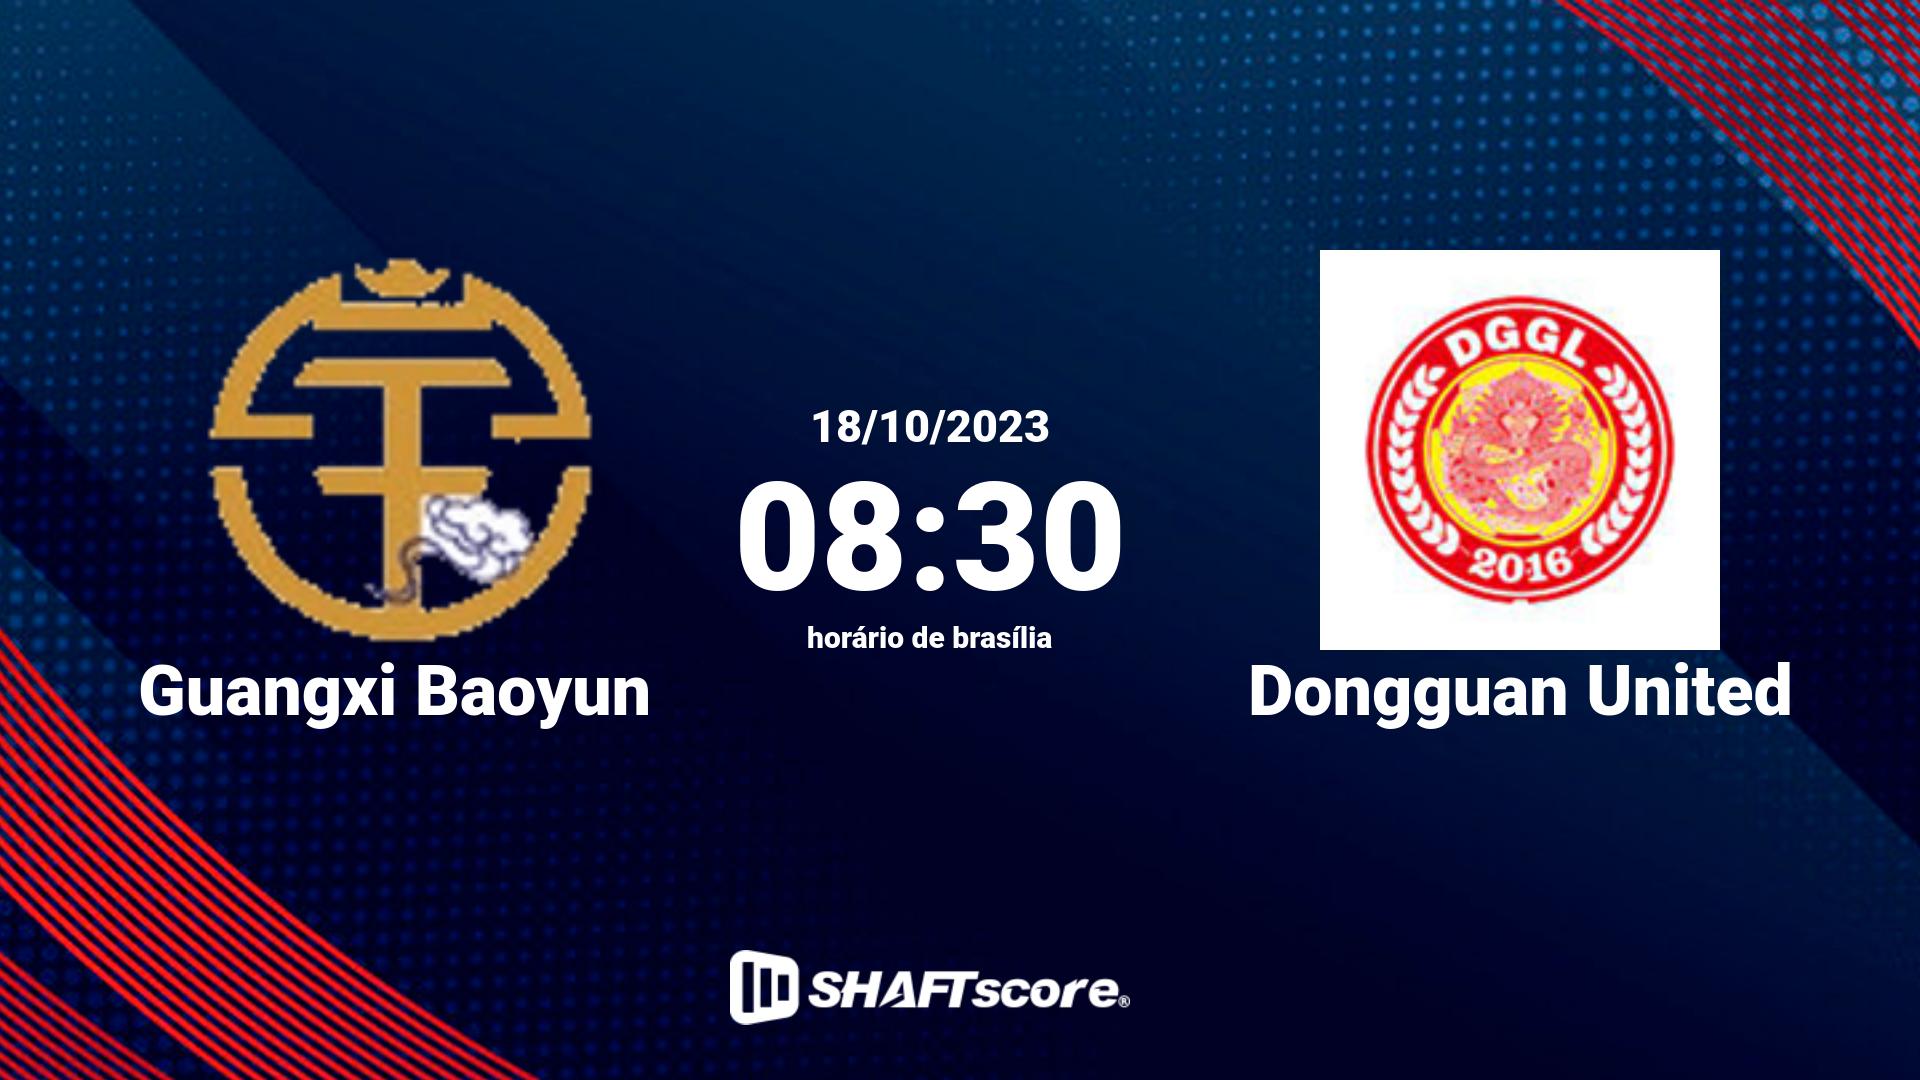 Estatísticas do jogo Guangxi Baoyun vs Dongguan United 18.10 08:30